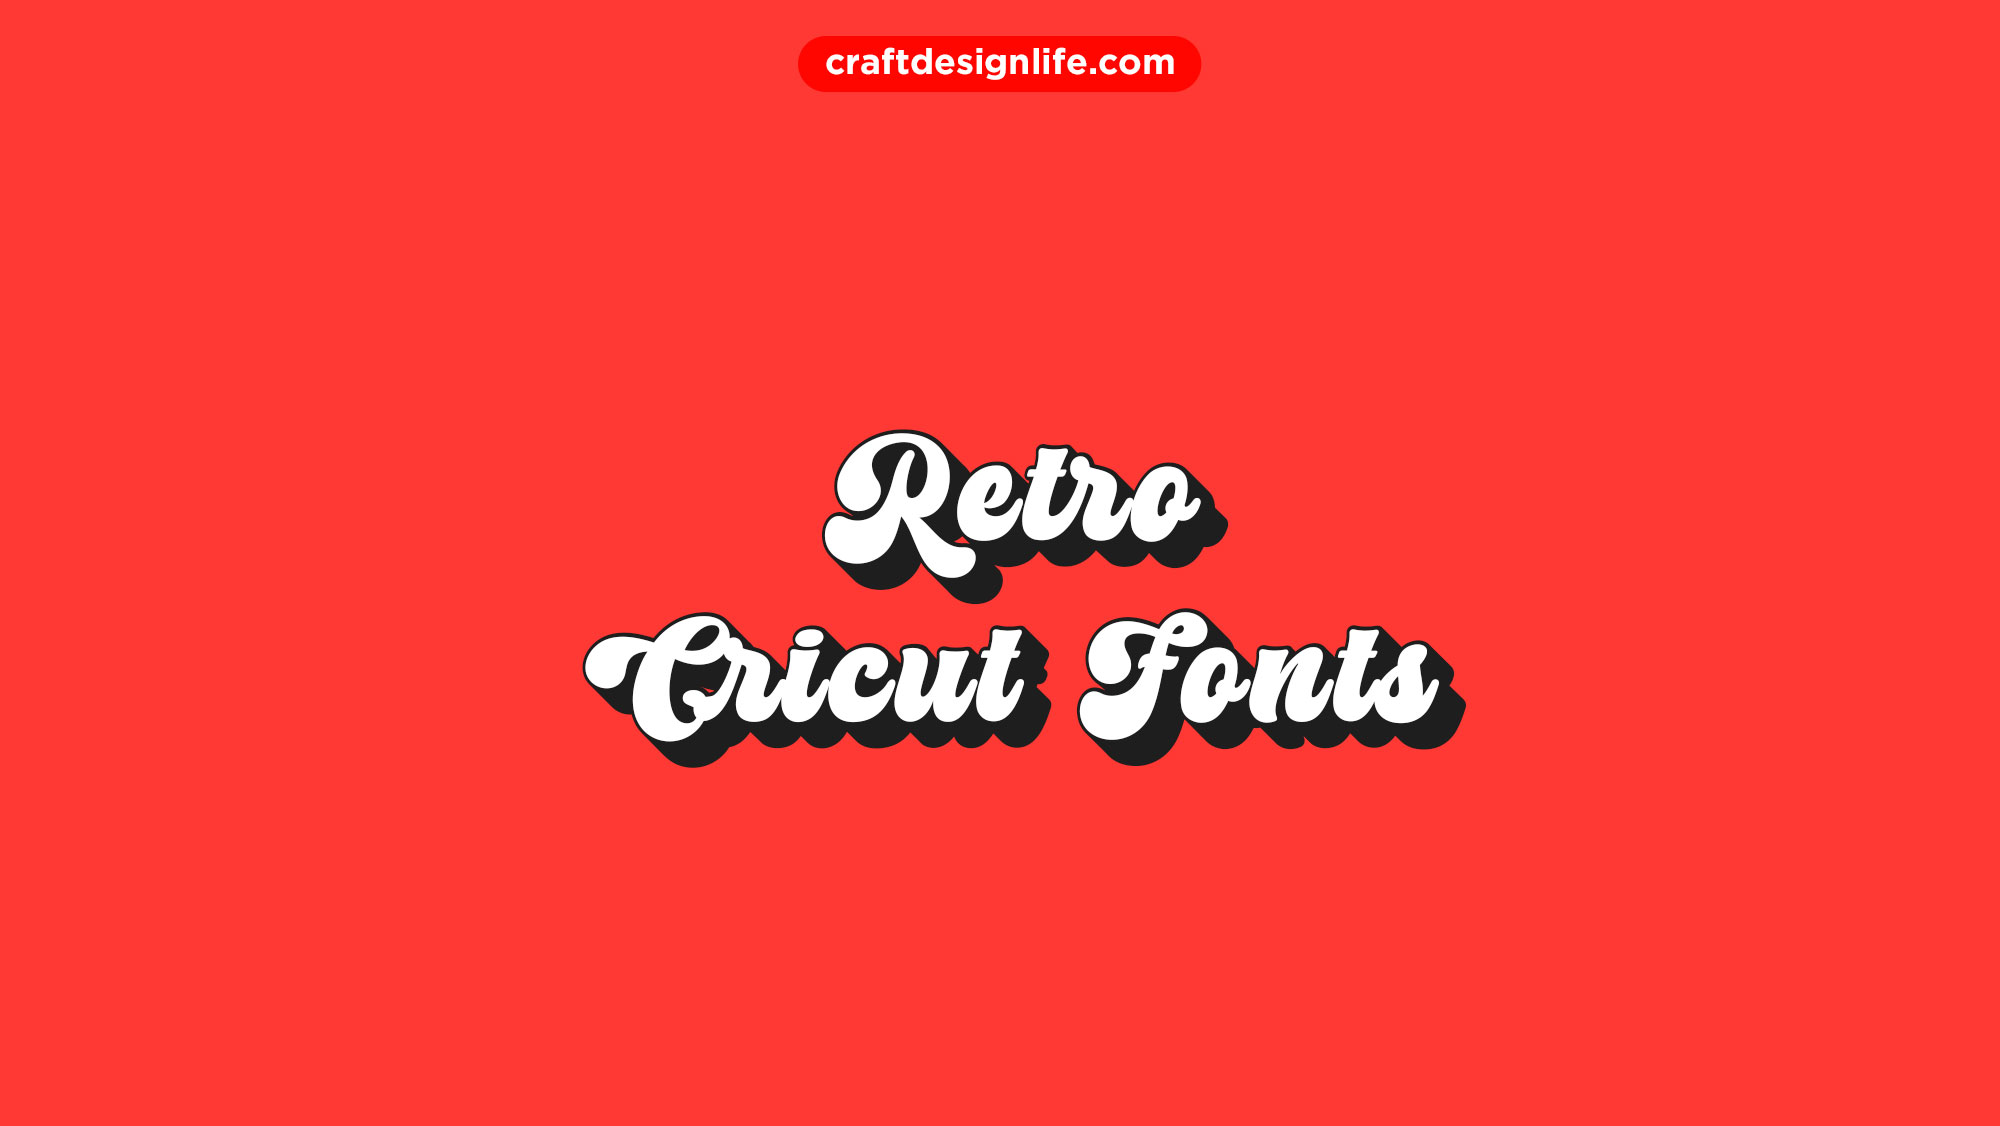 Best 80s Retro Fonts for Cricut